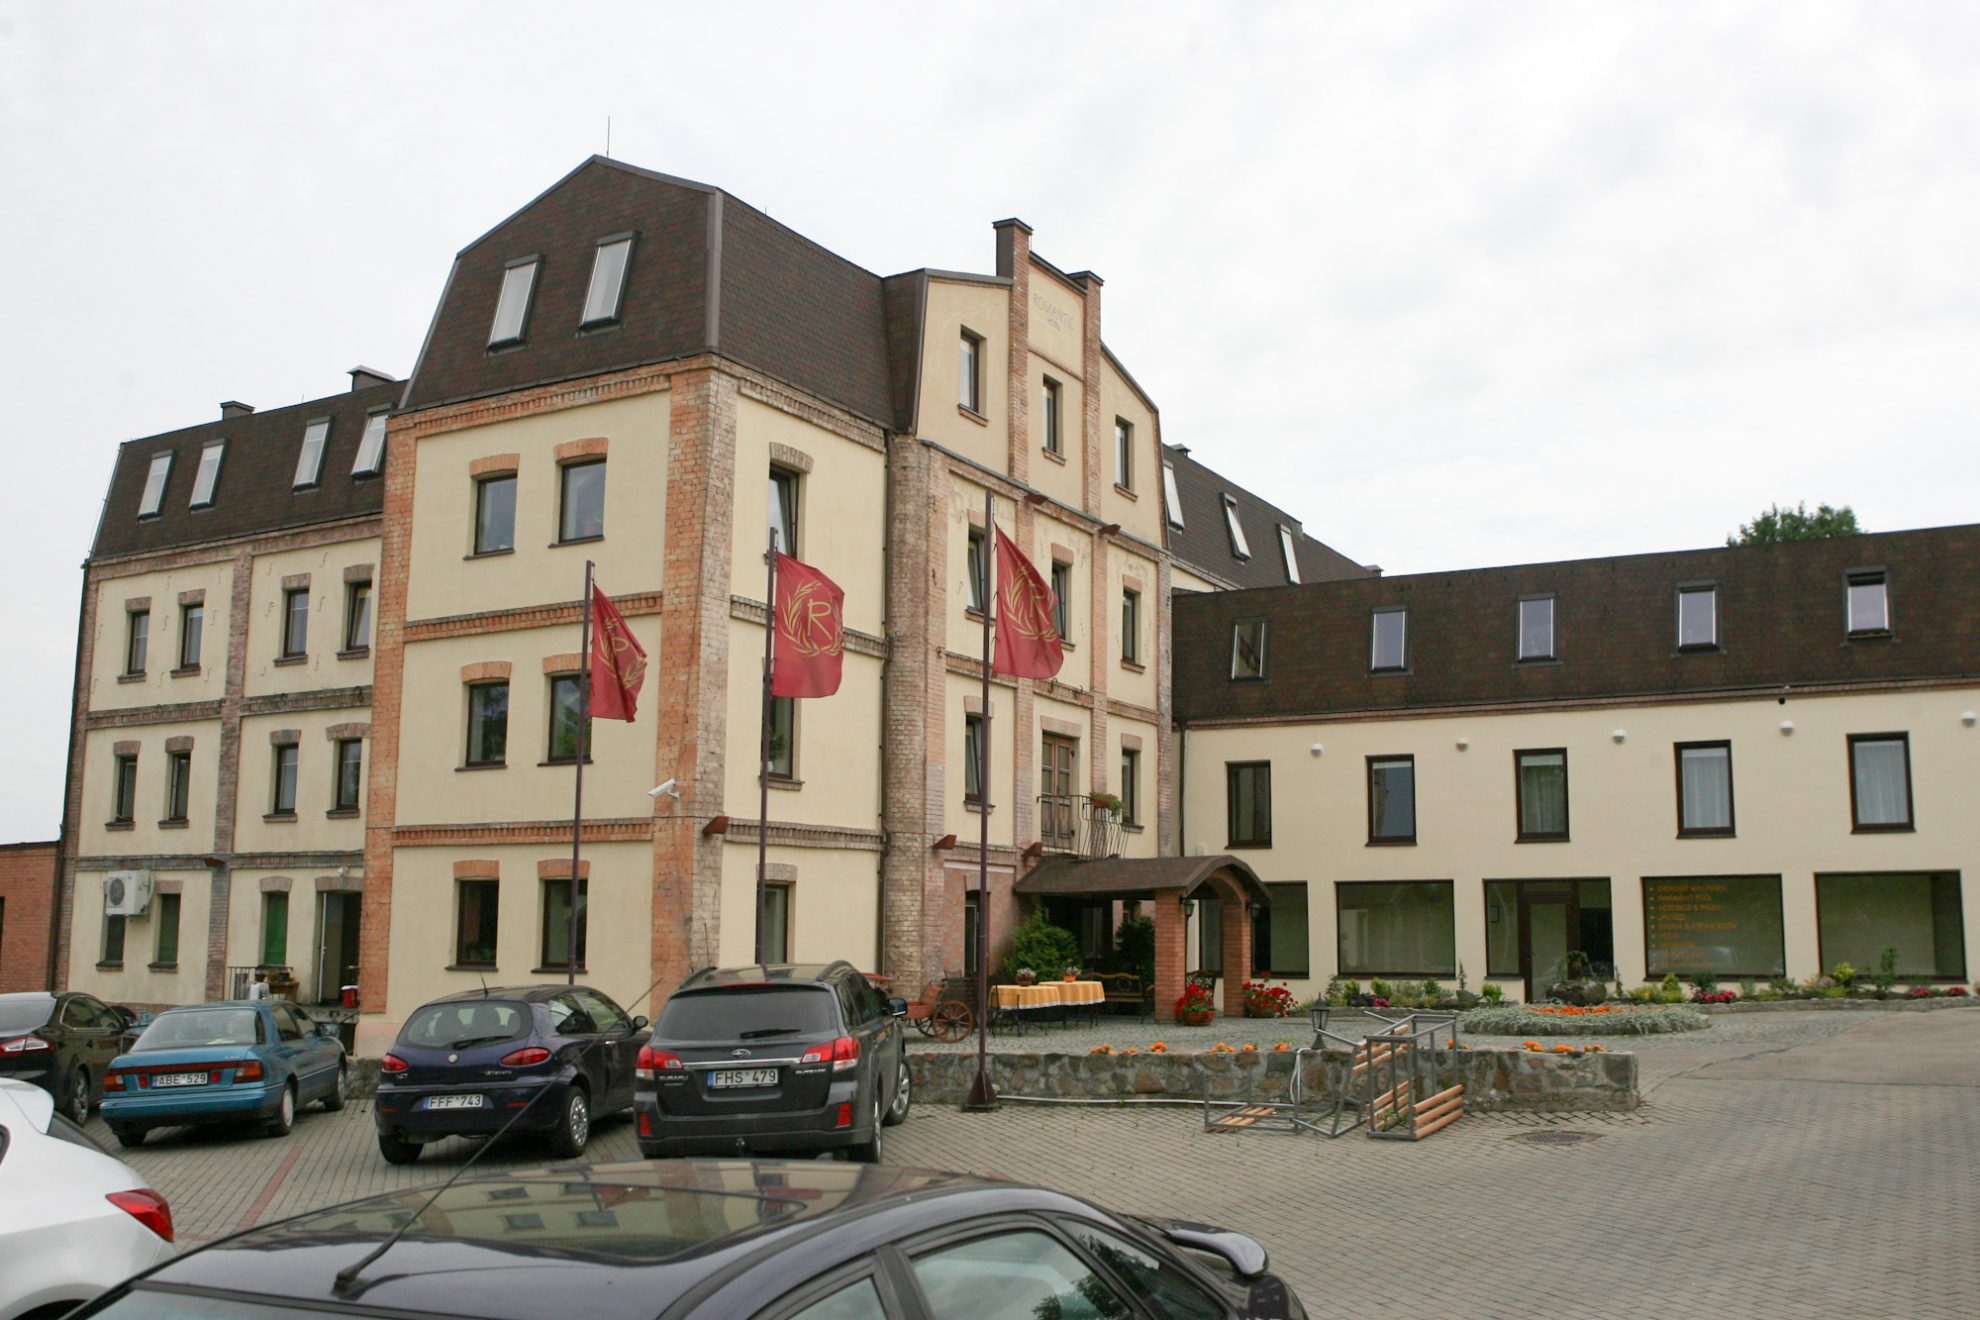 Gal ir iš tiesų nakvynė Panevėžio viešbutyje brangiausia Lietuvoje. Antai dviejų vyrų viešnagė prabangiausiame Panevėžio viešbutyje „Romantic“ kainavo net 3000 eurų.